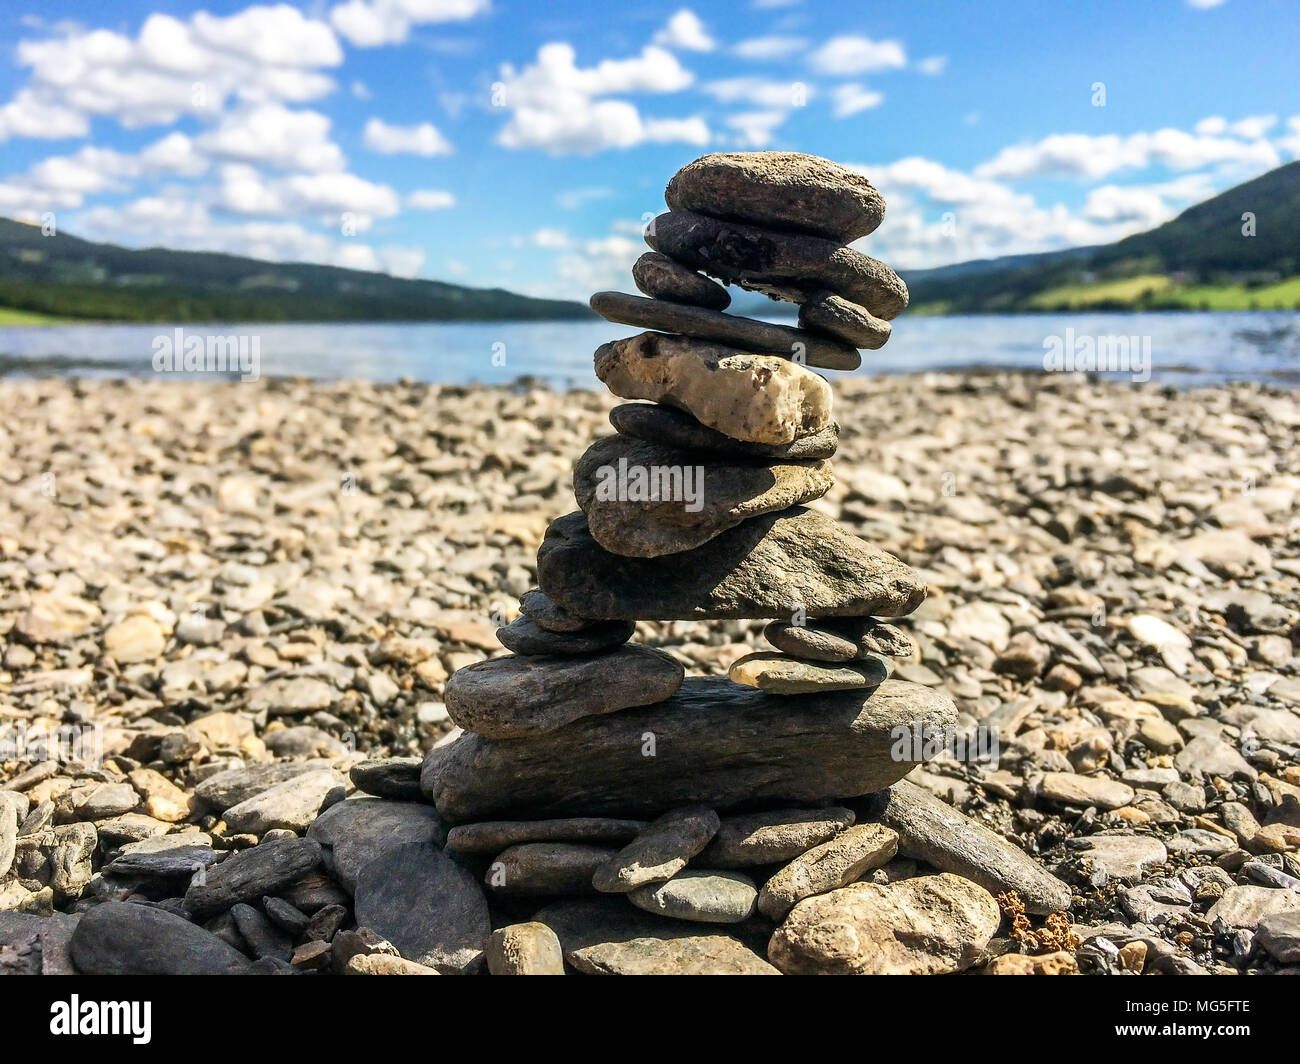 De petites pierres empilés comme une tour de pierre qui peut symboliser l'équilibre, la patience et la maîtrise. Banque D'Images